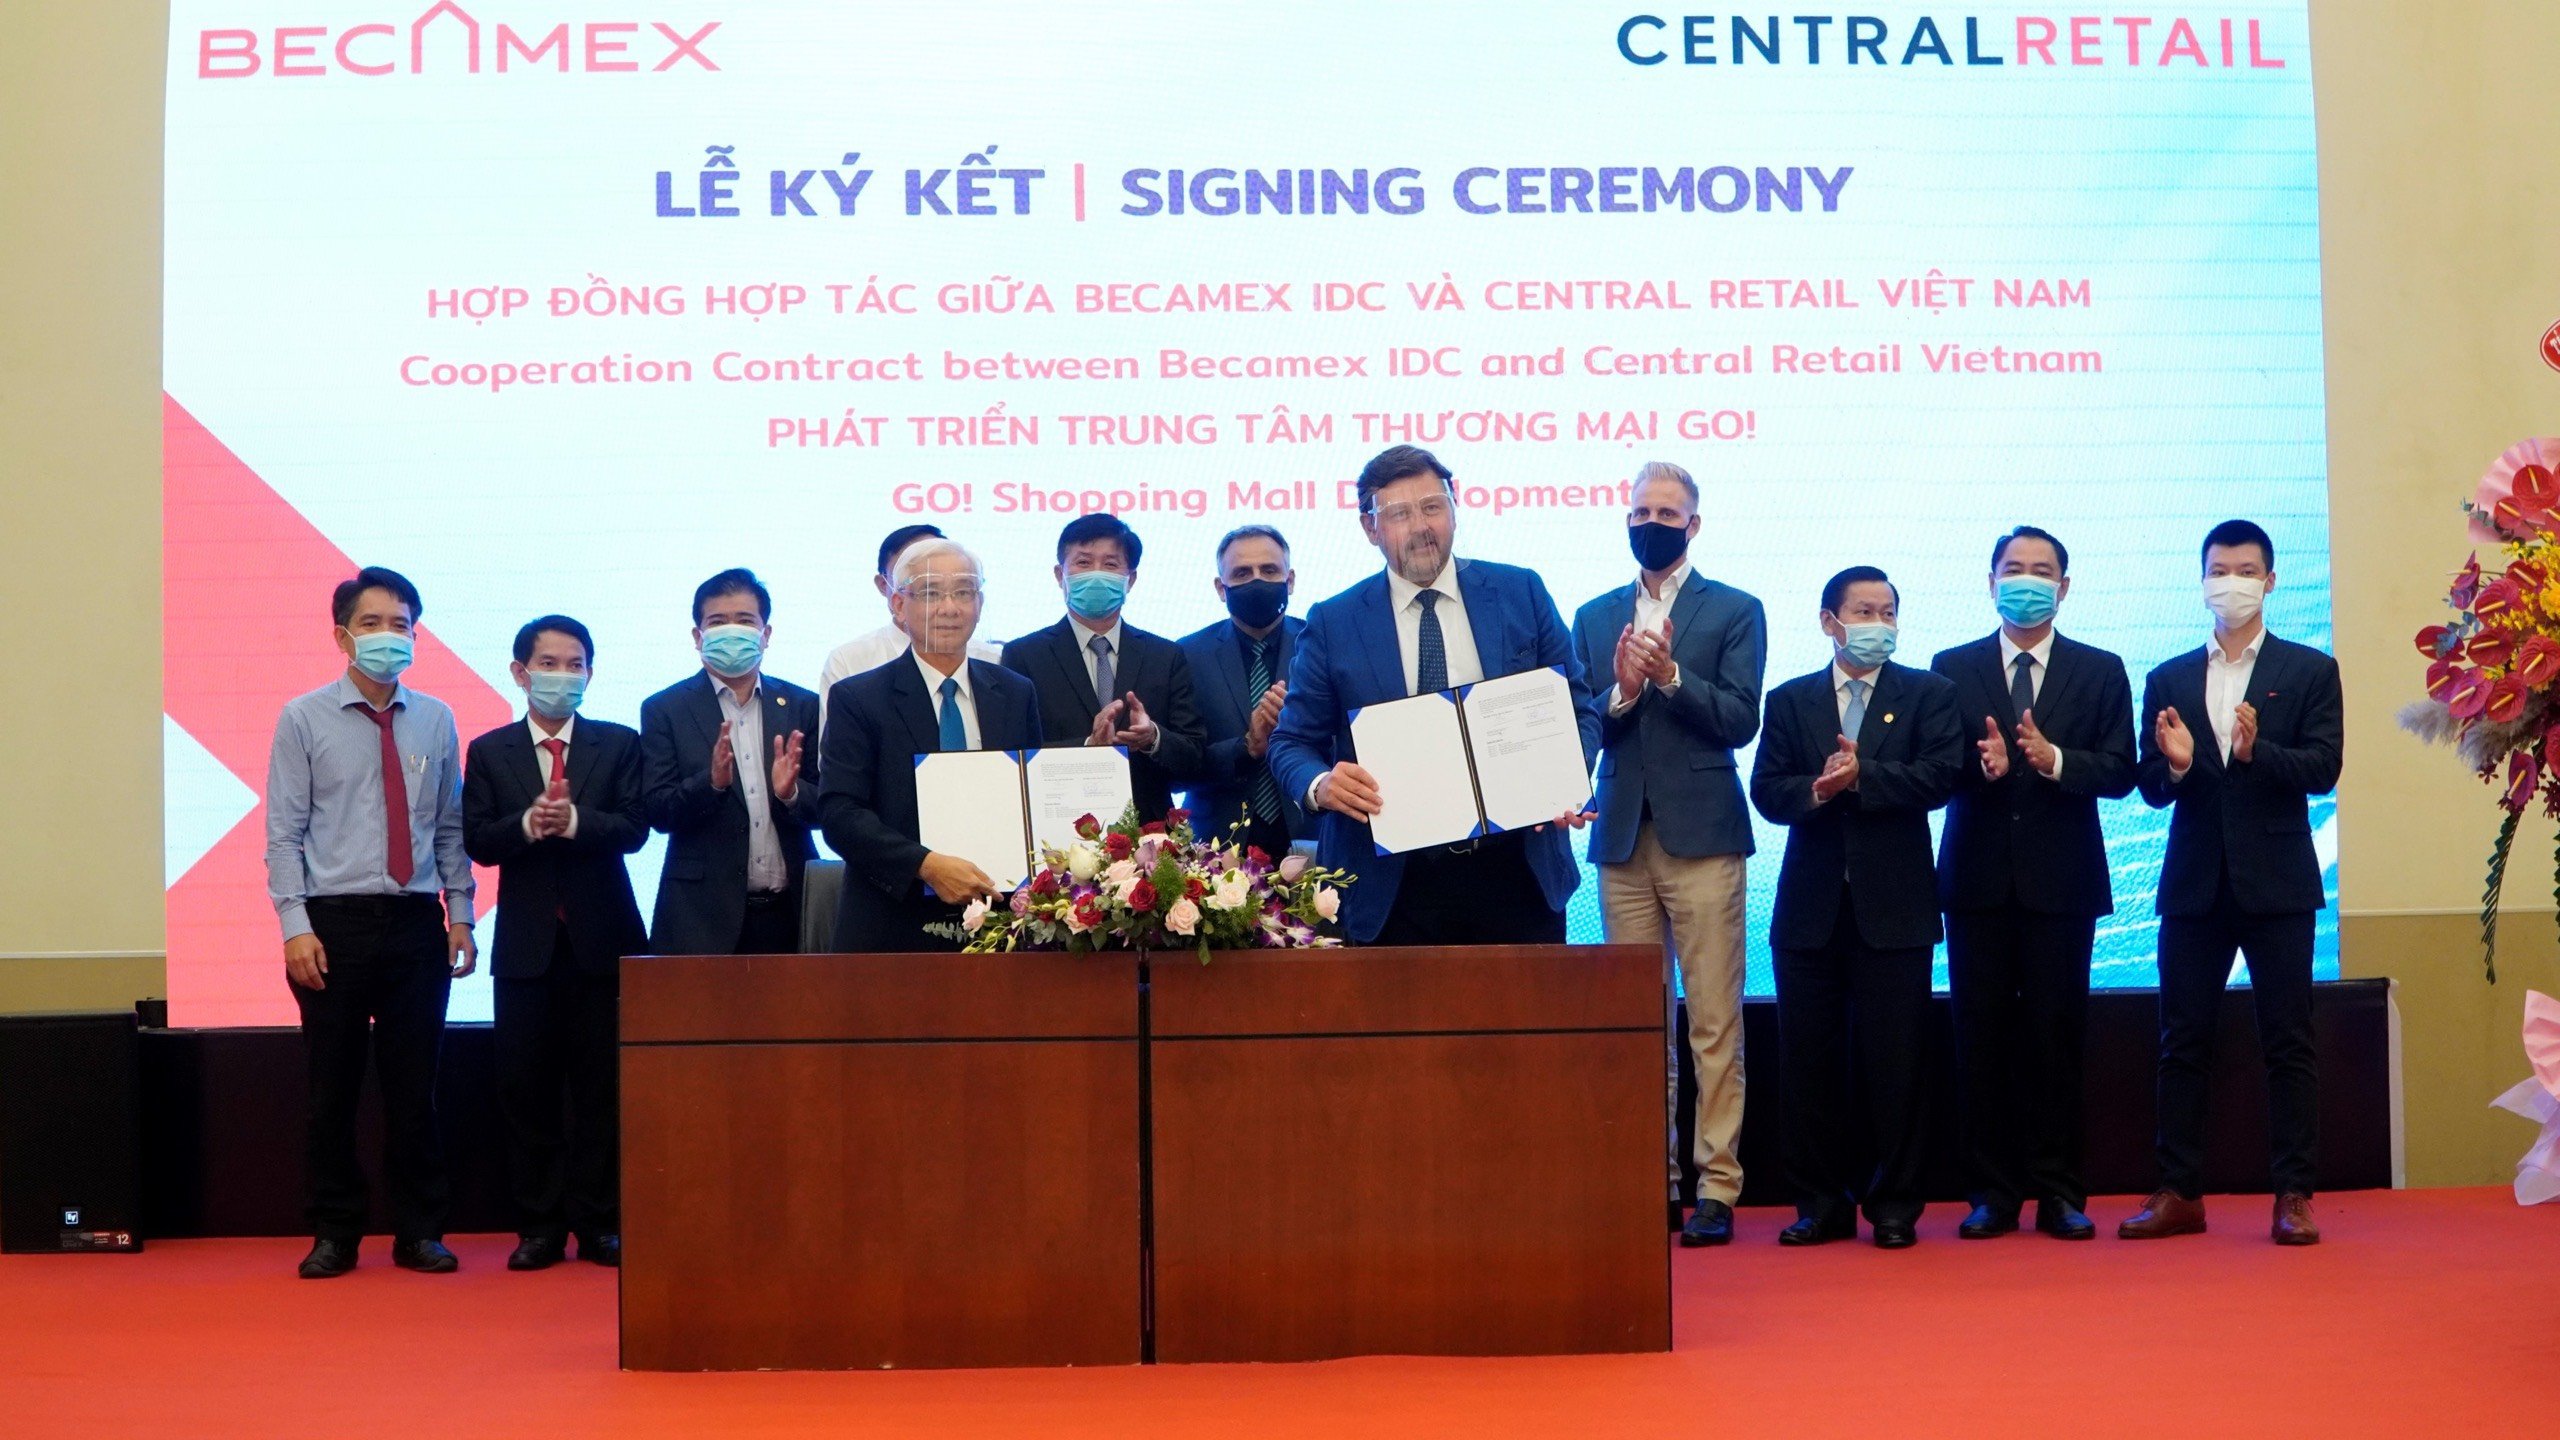 Becamex IDC và Central Retail Vietnam hợp tác phát triển trung tâm thương mại "Go!"